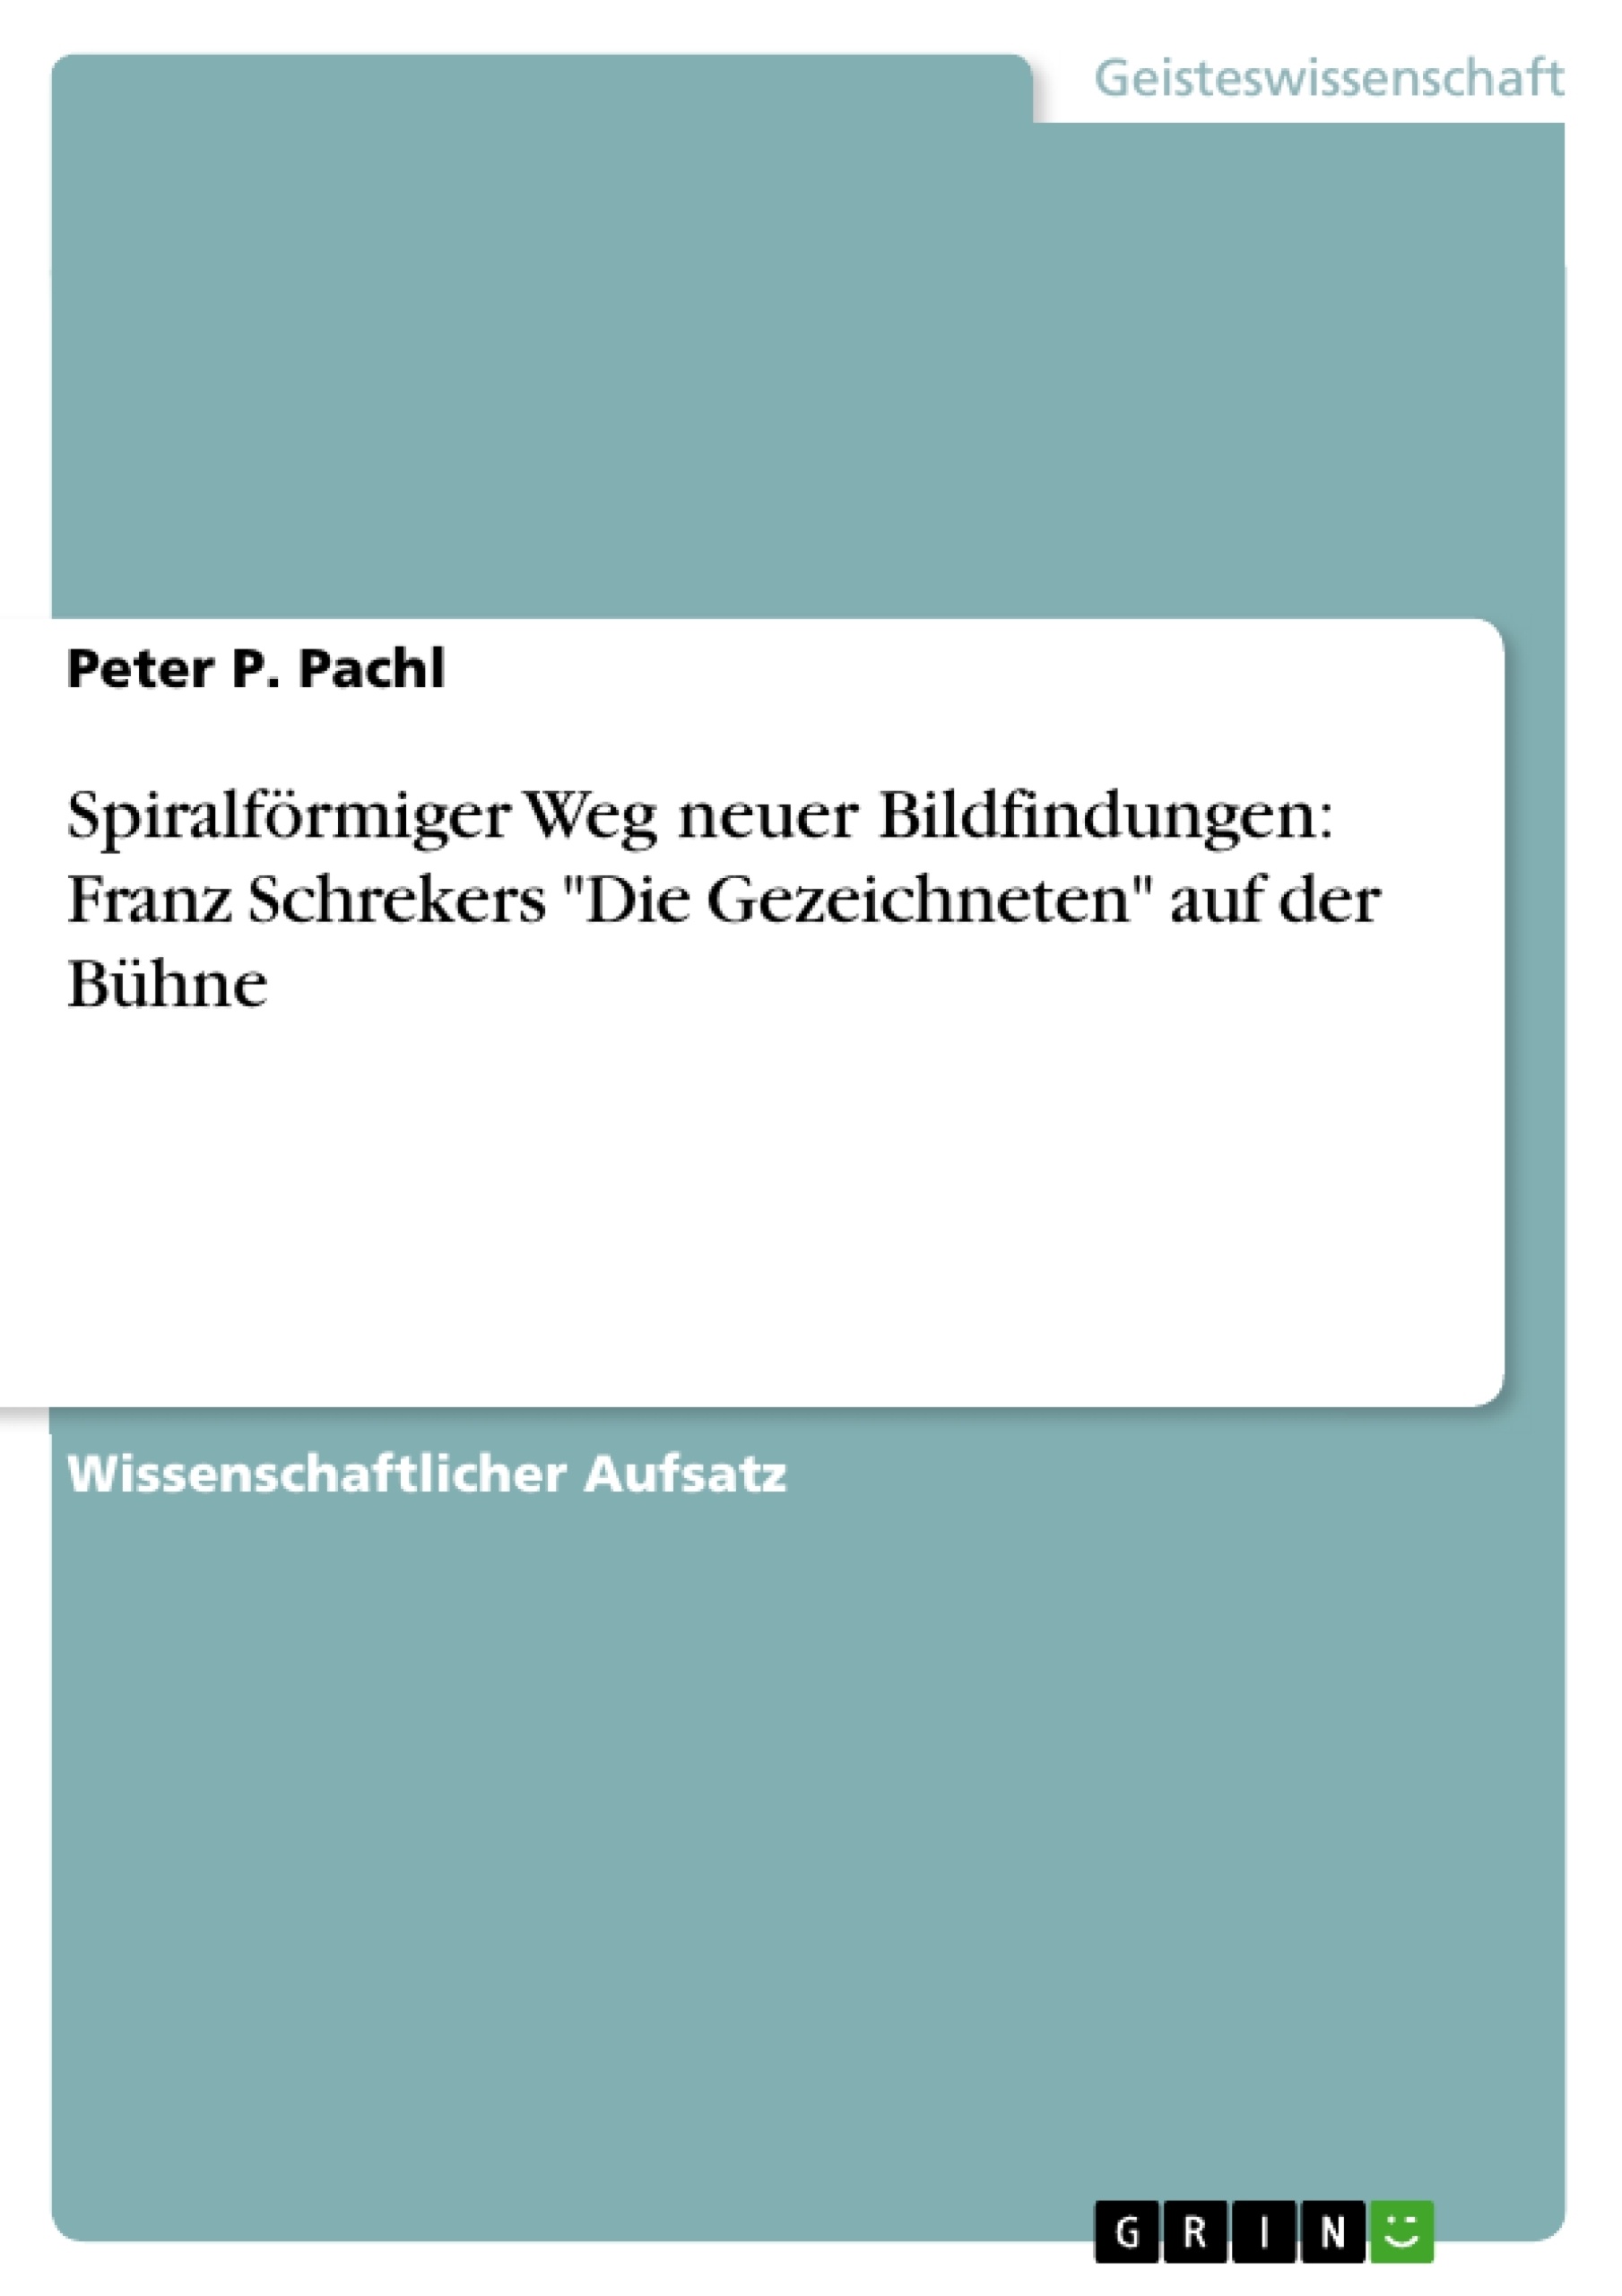 Título: Spiralförmiger Weg neuer Bildfindungen: Franz Schrekers "Die Gezeichneten" auf der Bühne